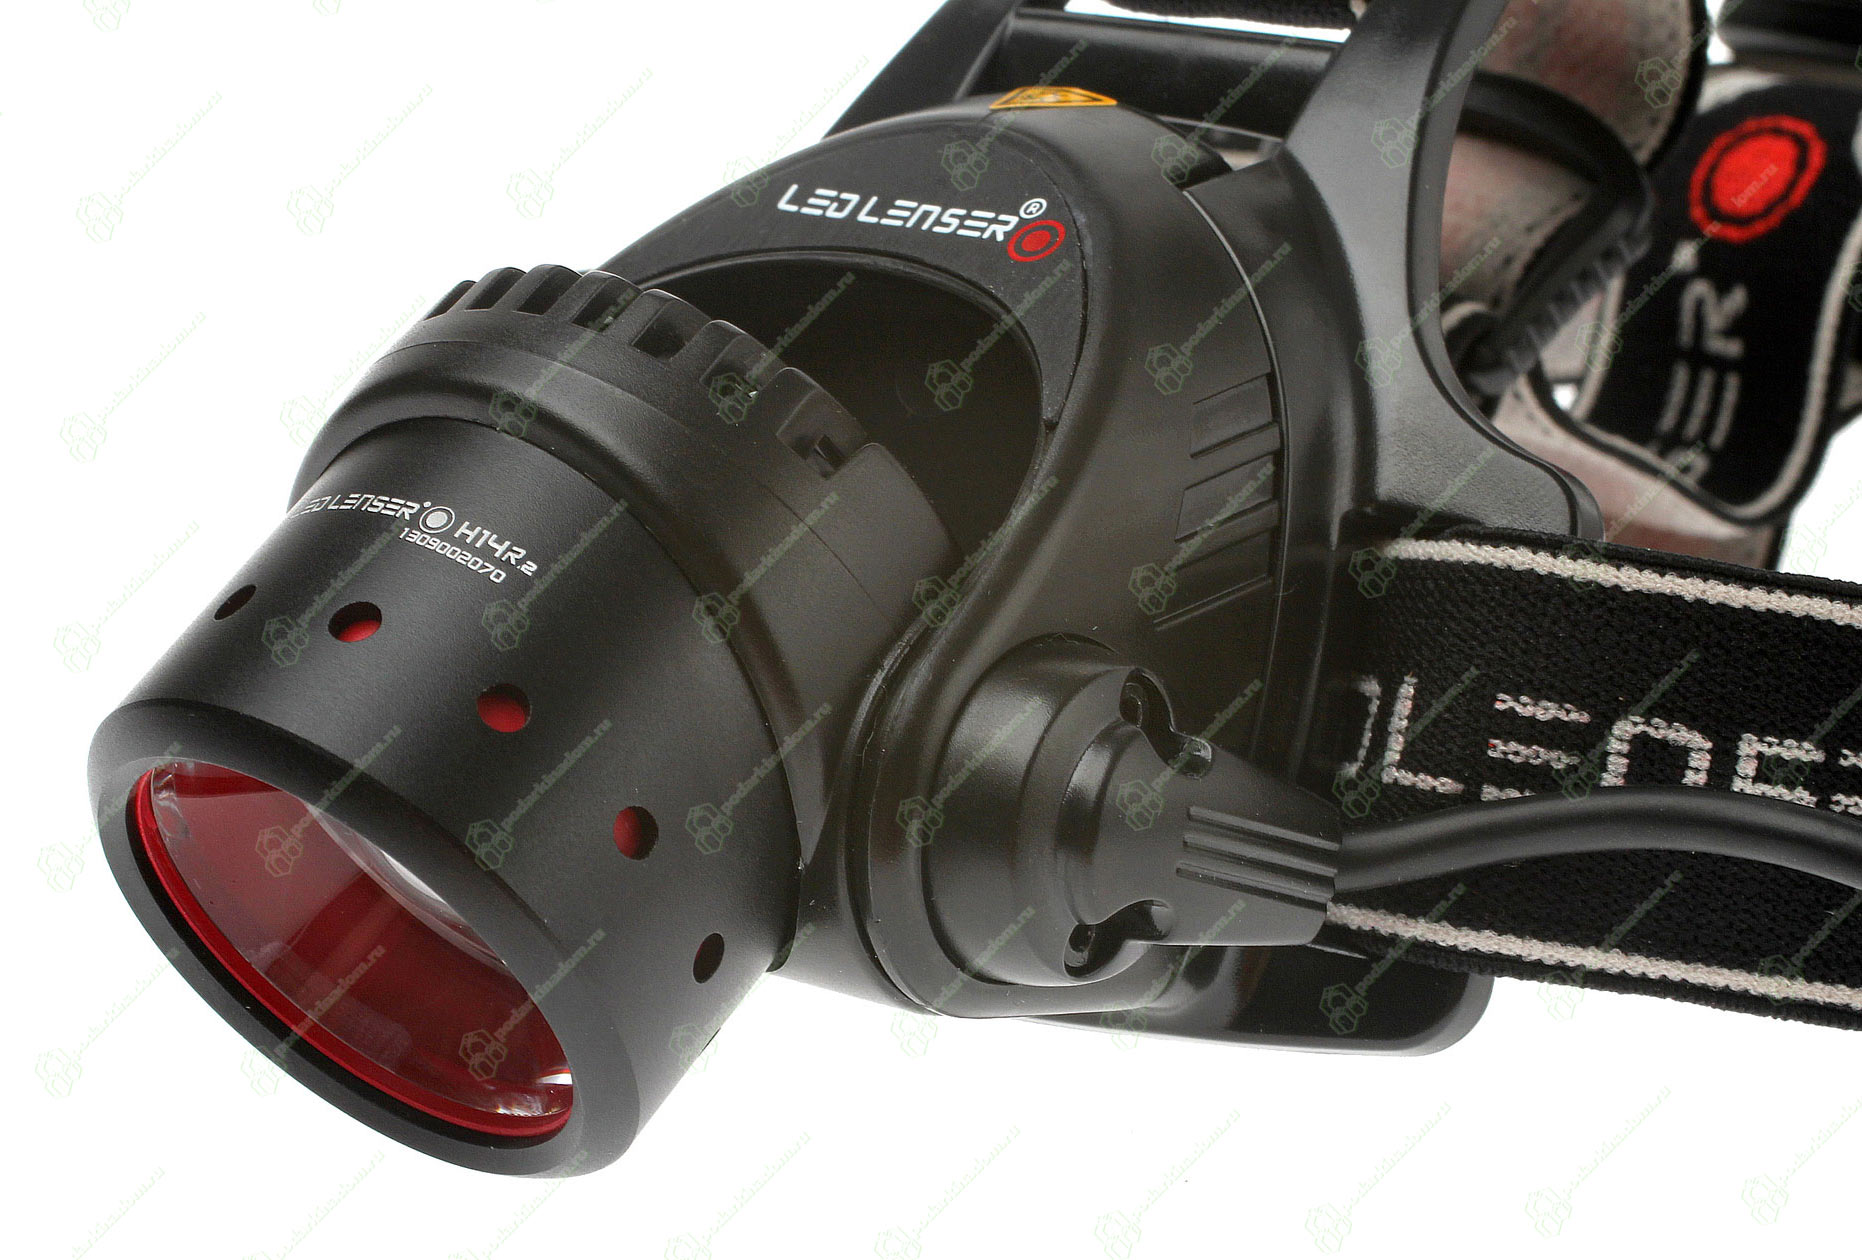 LED Lenser H14R.2